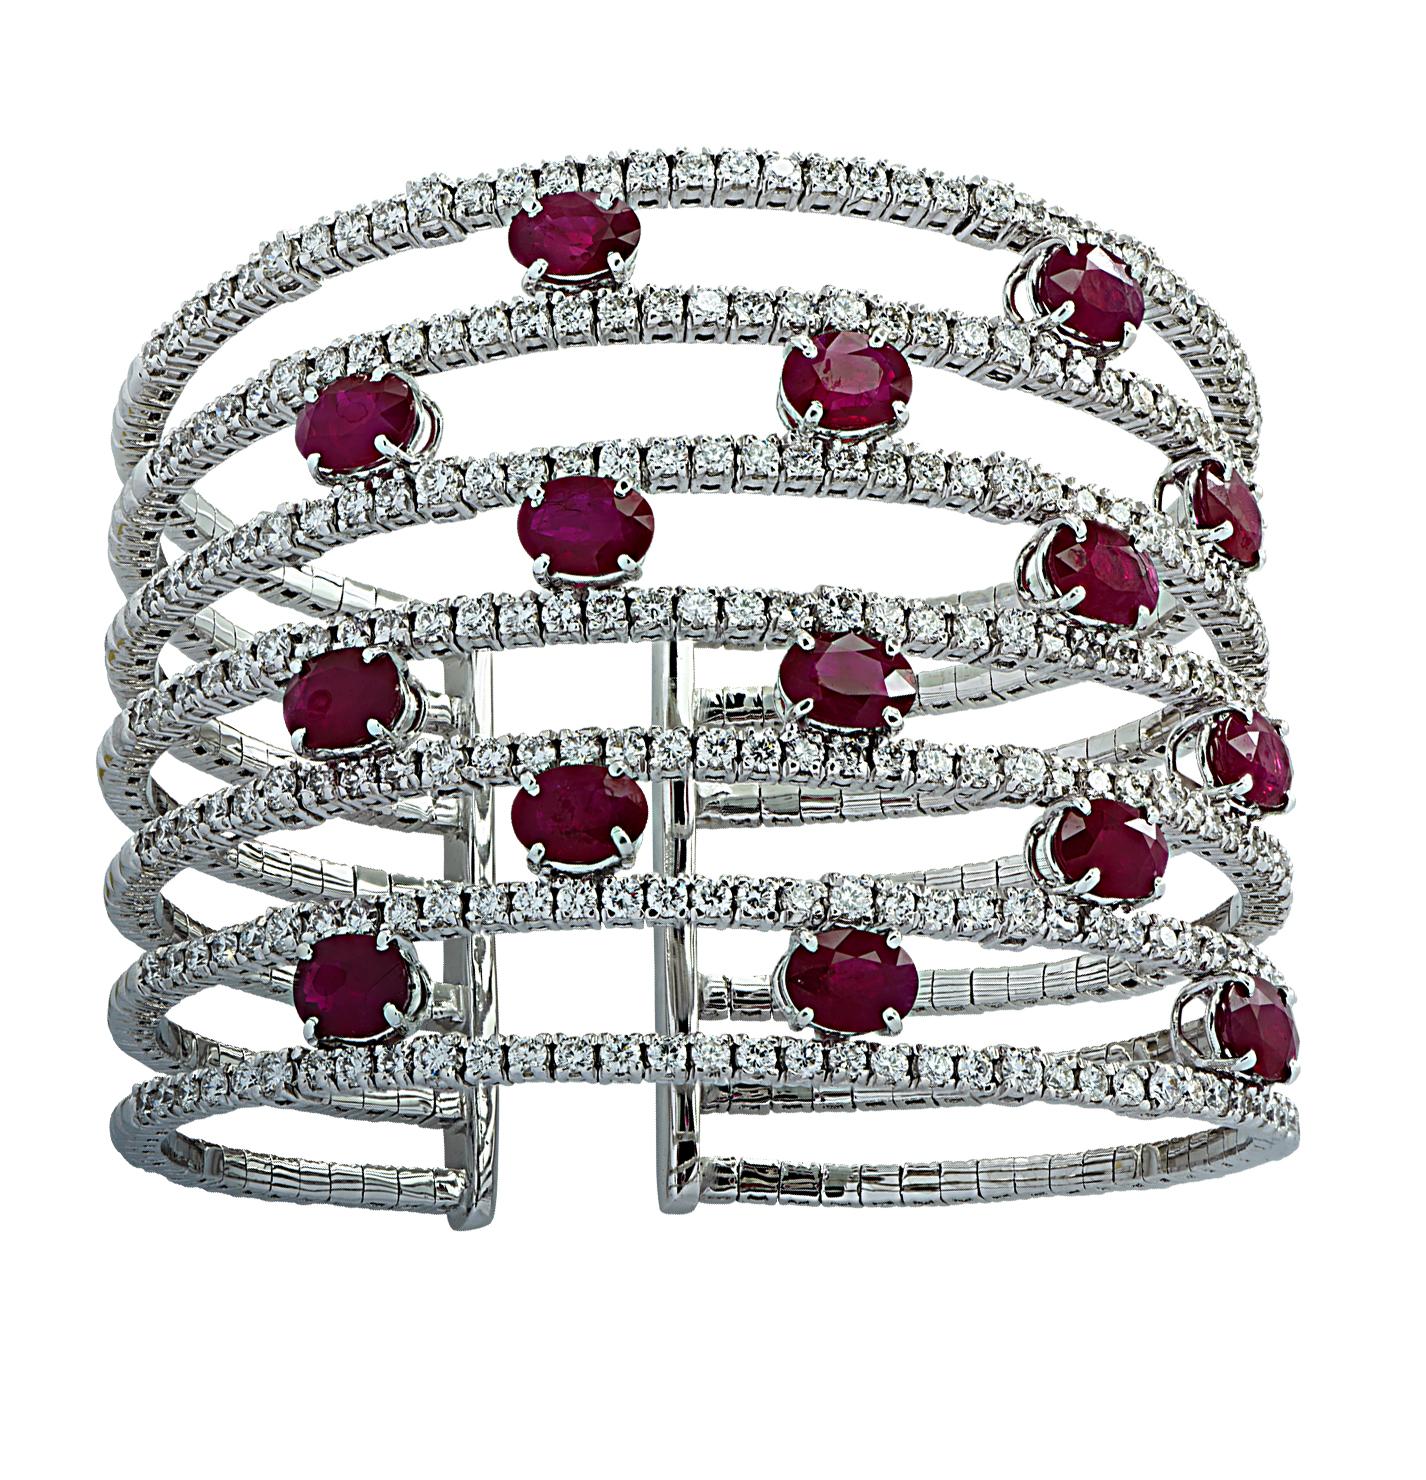 Superbe bracelet bracelet manchette diamant et rubis en or blanc 18 carats, présentant 15 rubis ovales pesant approximativement 15.93 carats total et des diamants ronds de taille brillant pesant approximativement 9.62 carats total, couleur G, pureté